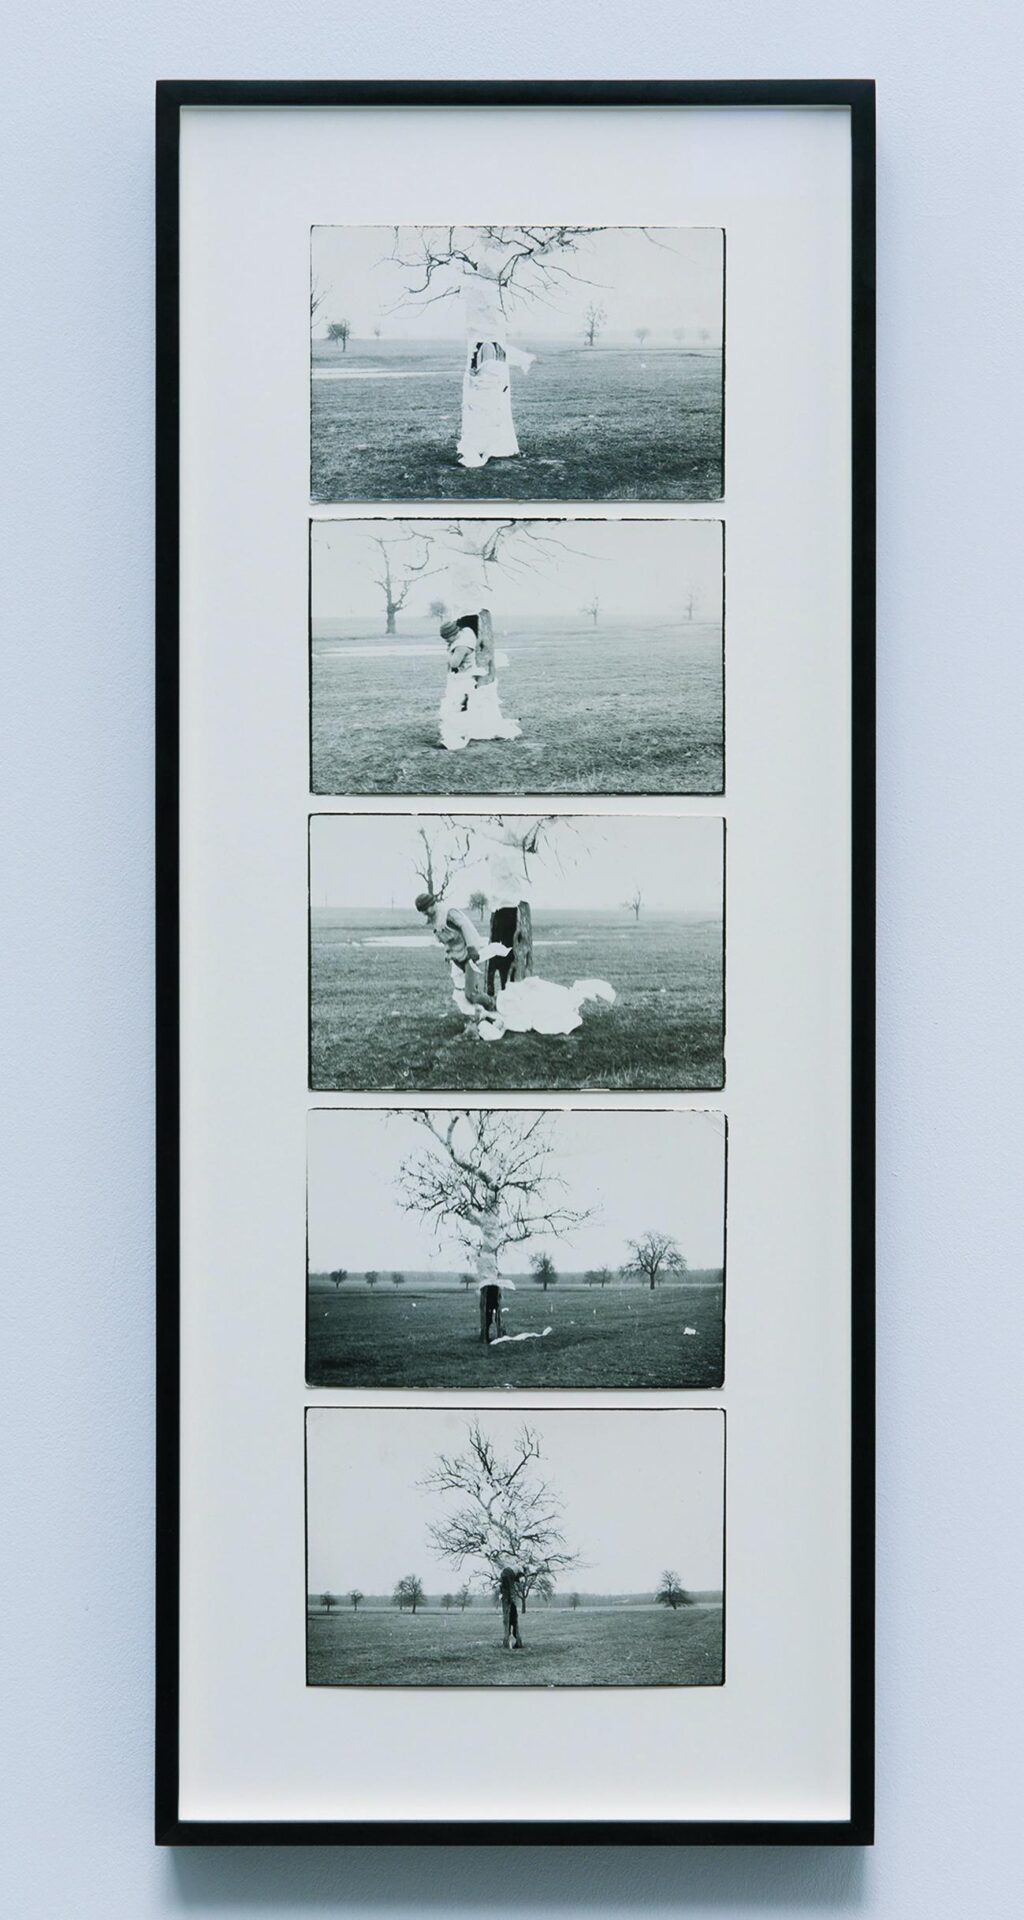 Dan Perjovschi, Action Tree, 1989